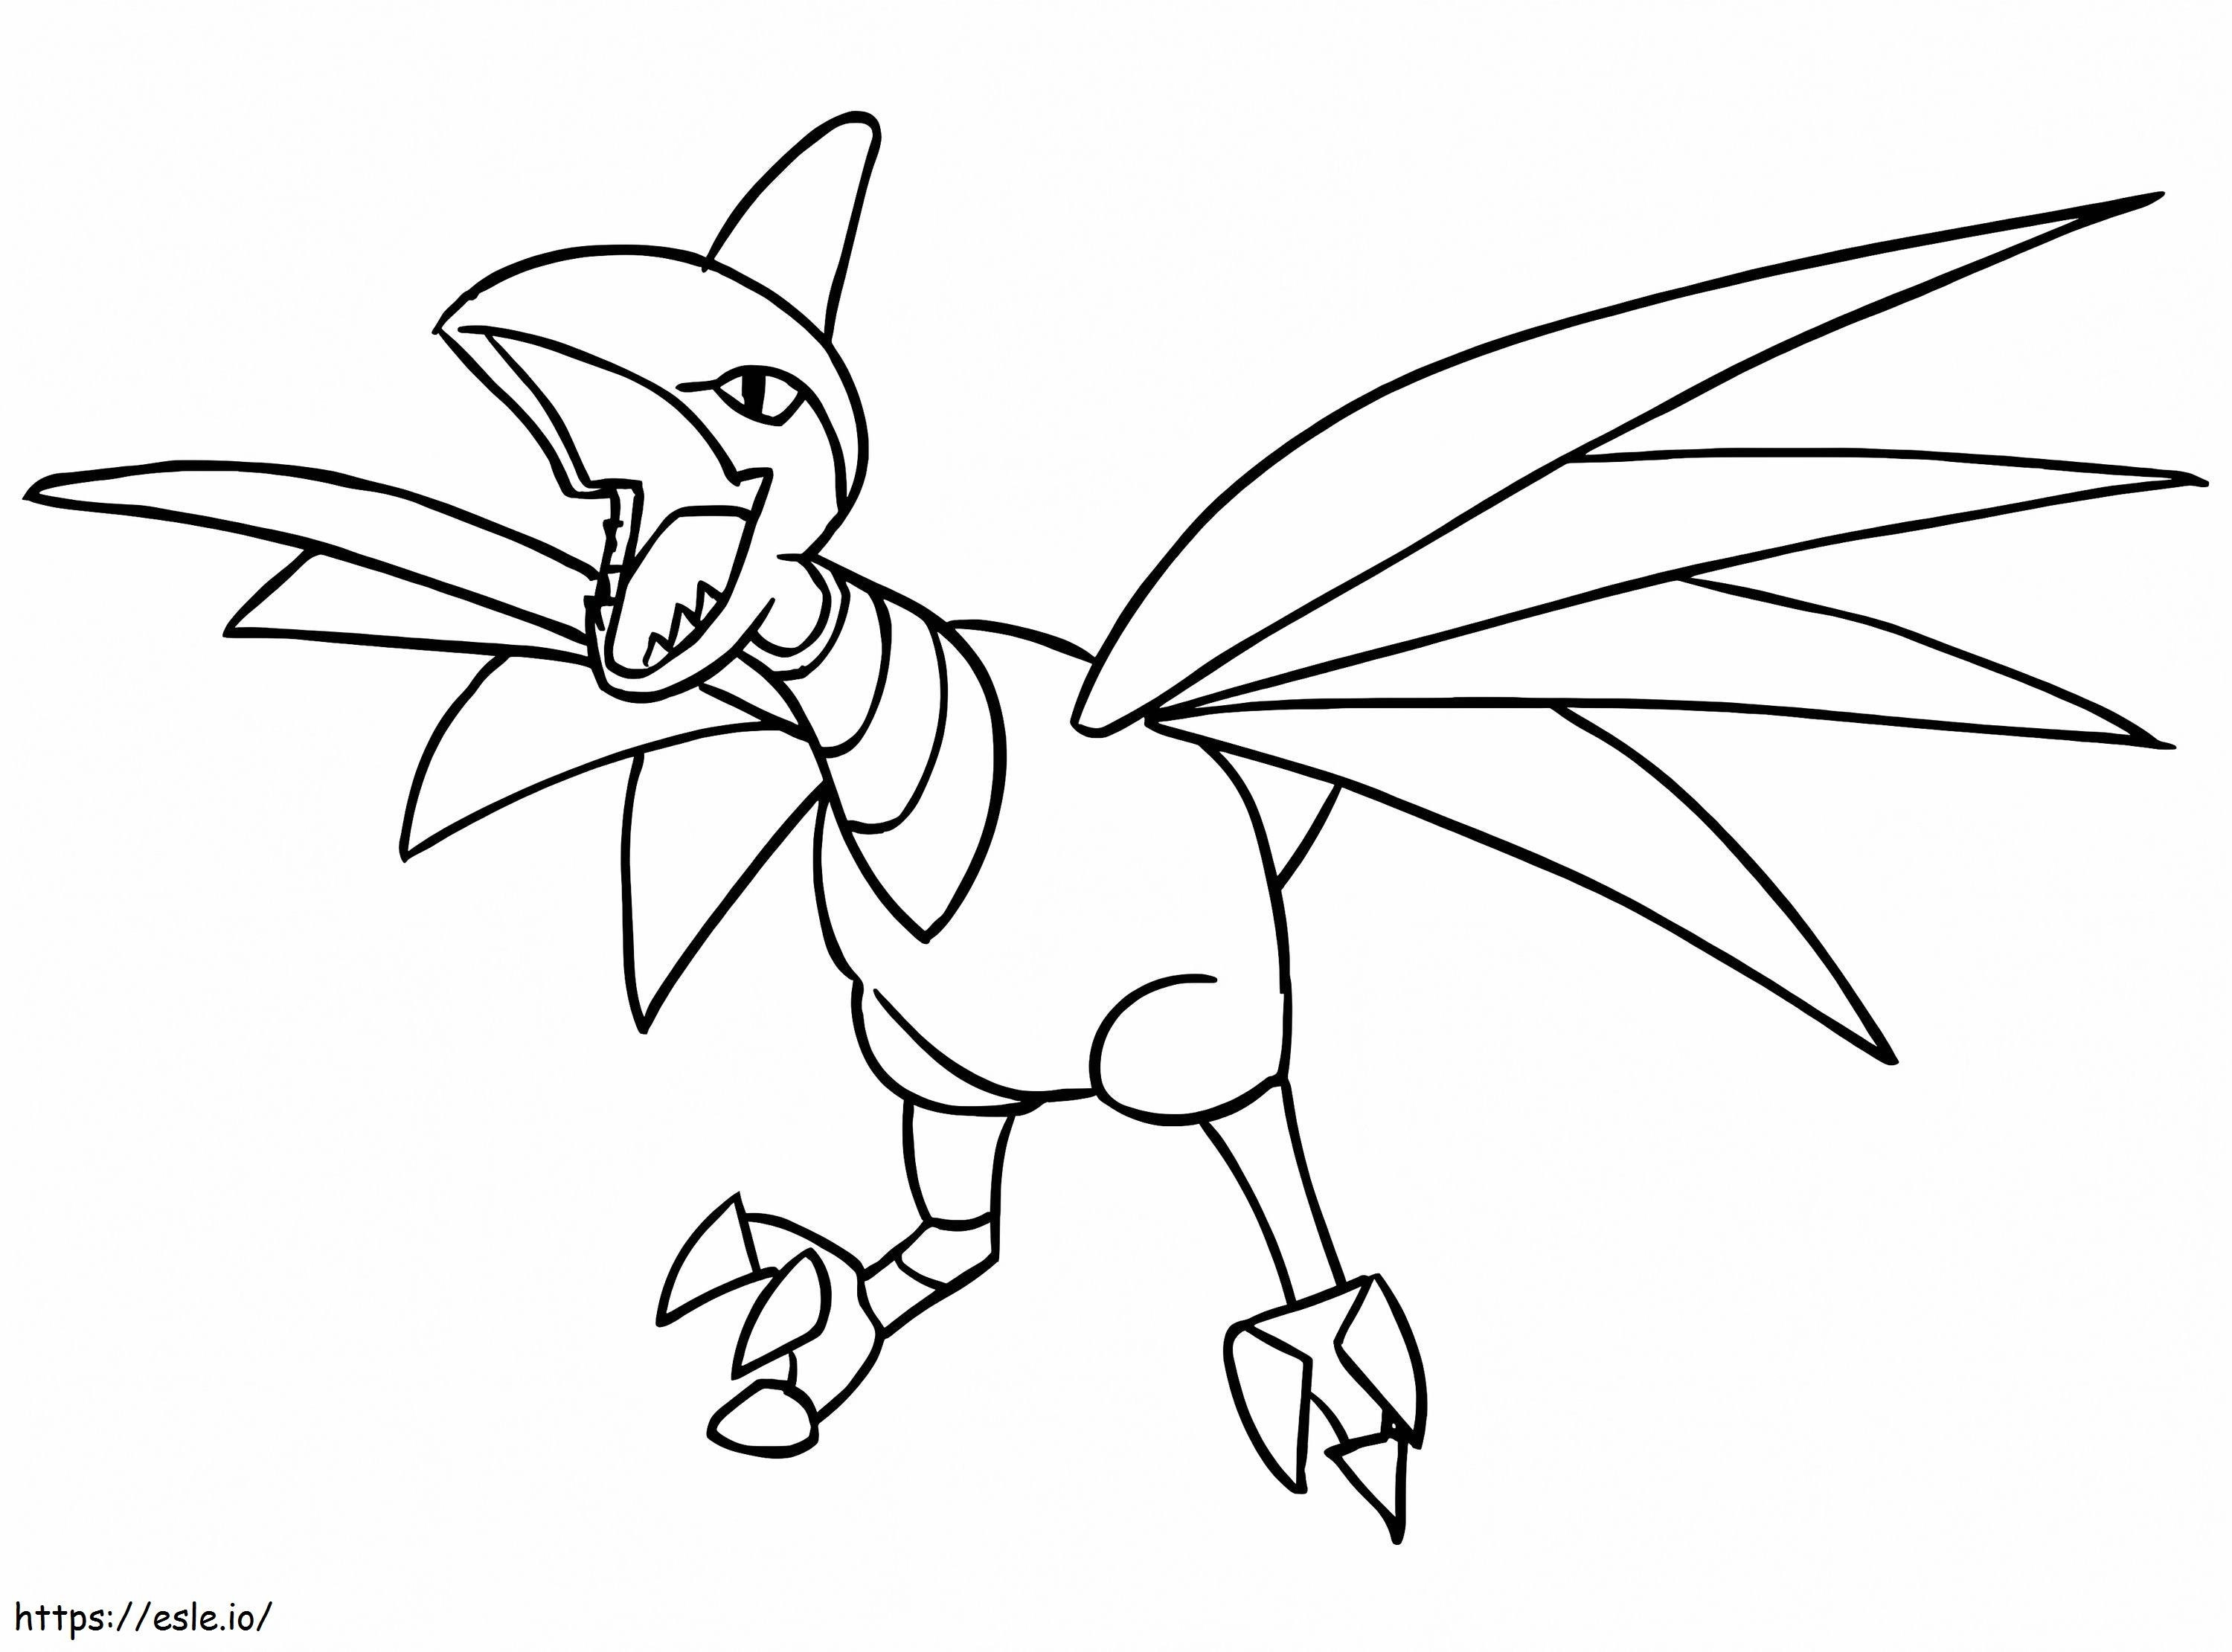 Coloriage Airmure Pokémon 2 à imprimer dessin